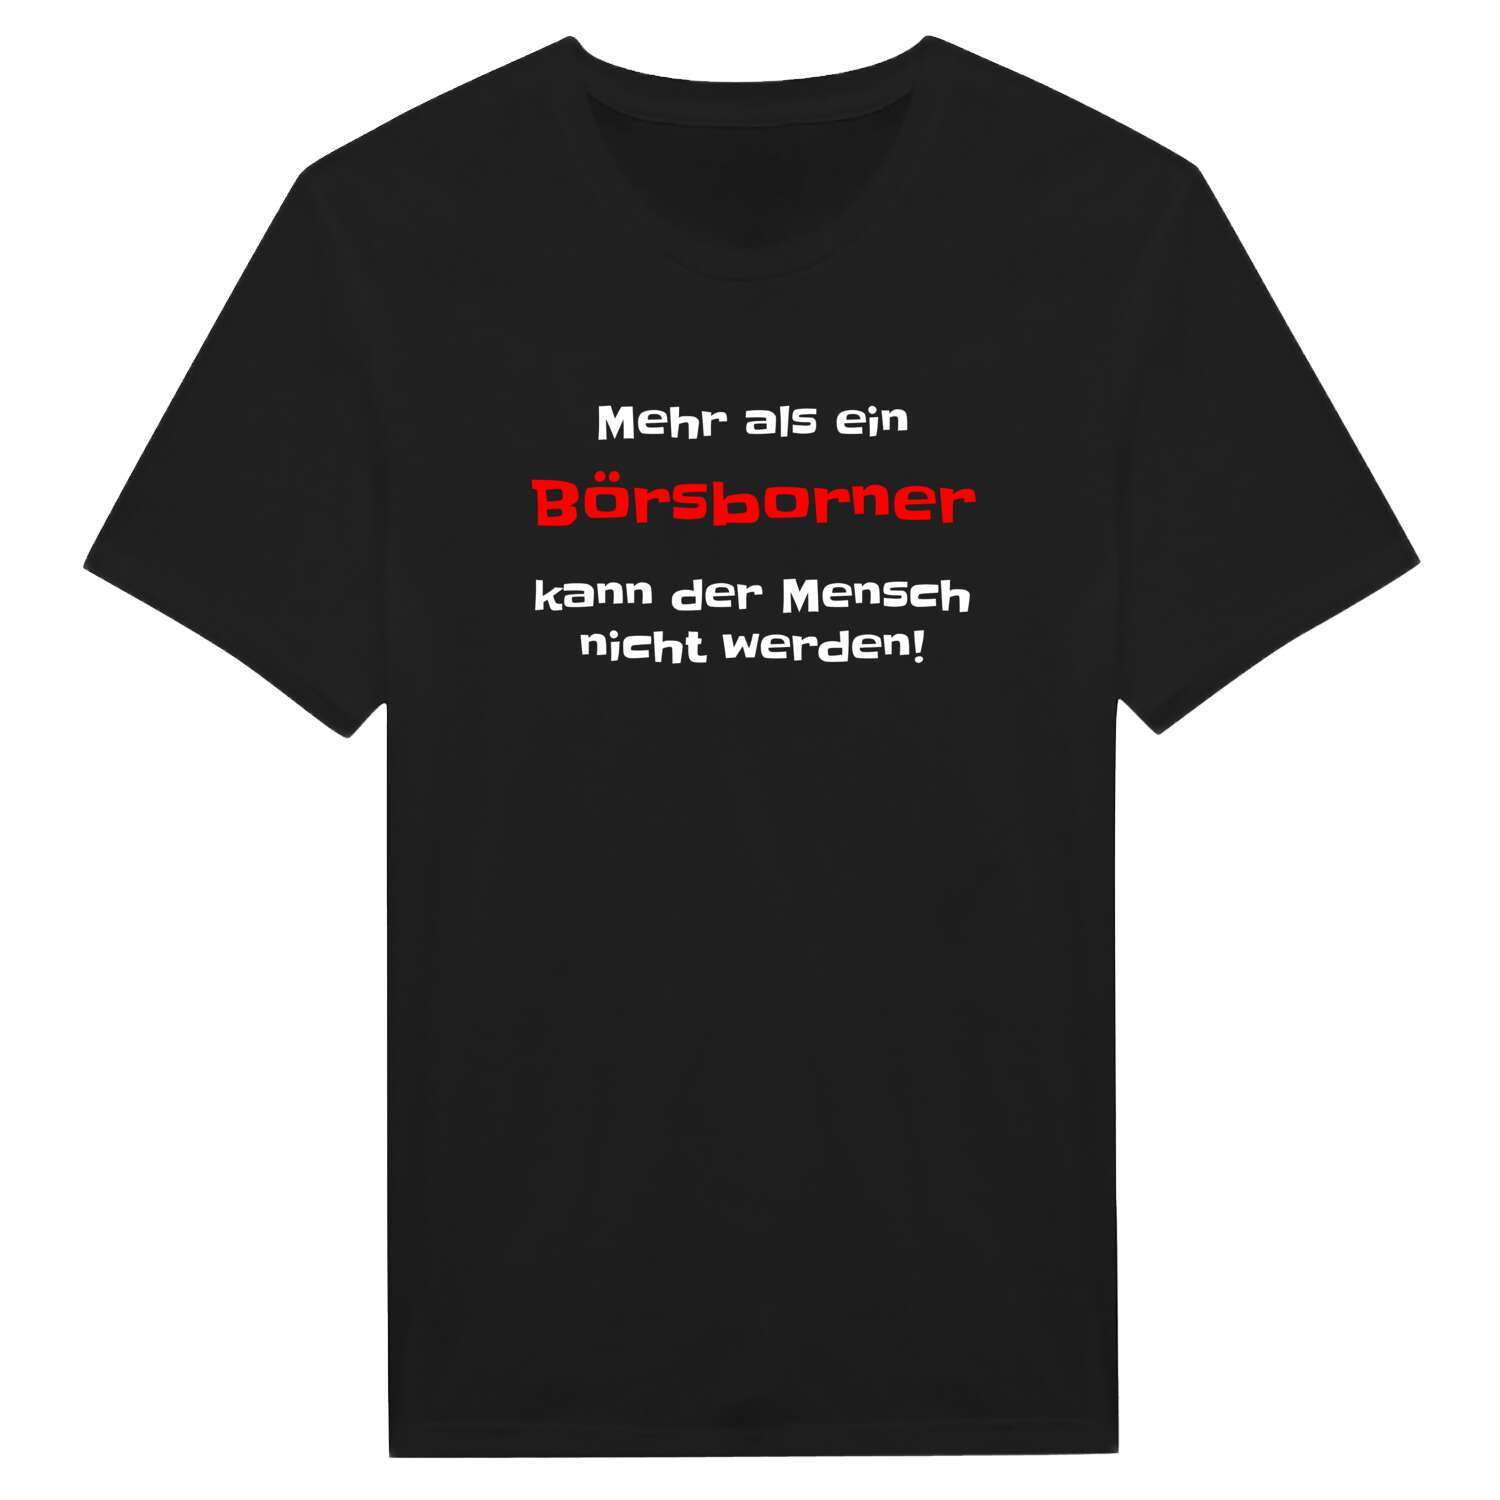 Börsborn T-Shirt »Mehr als ein«